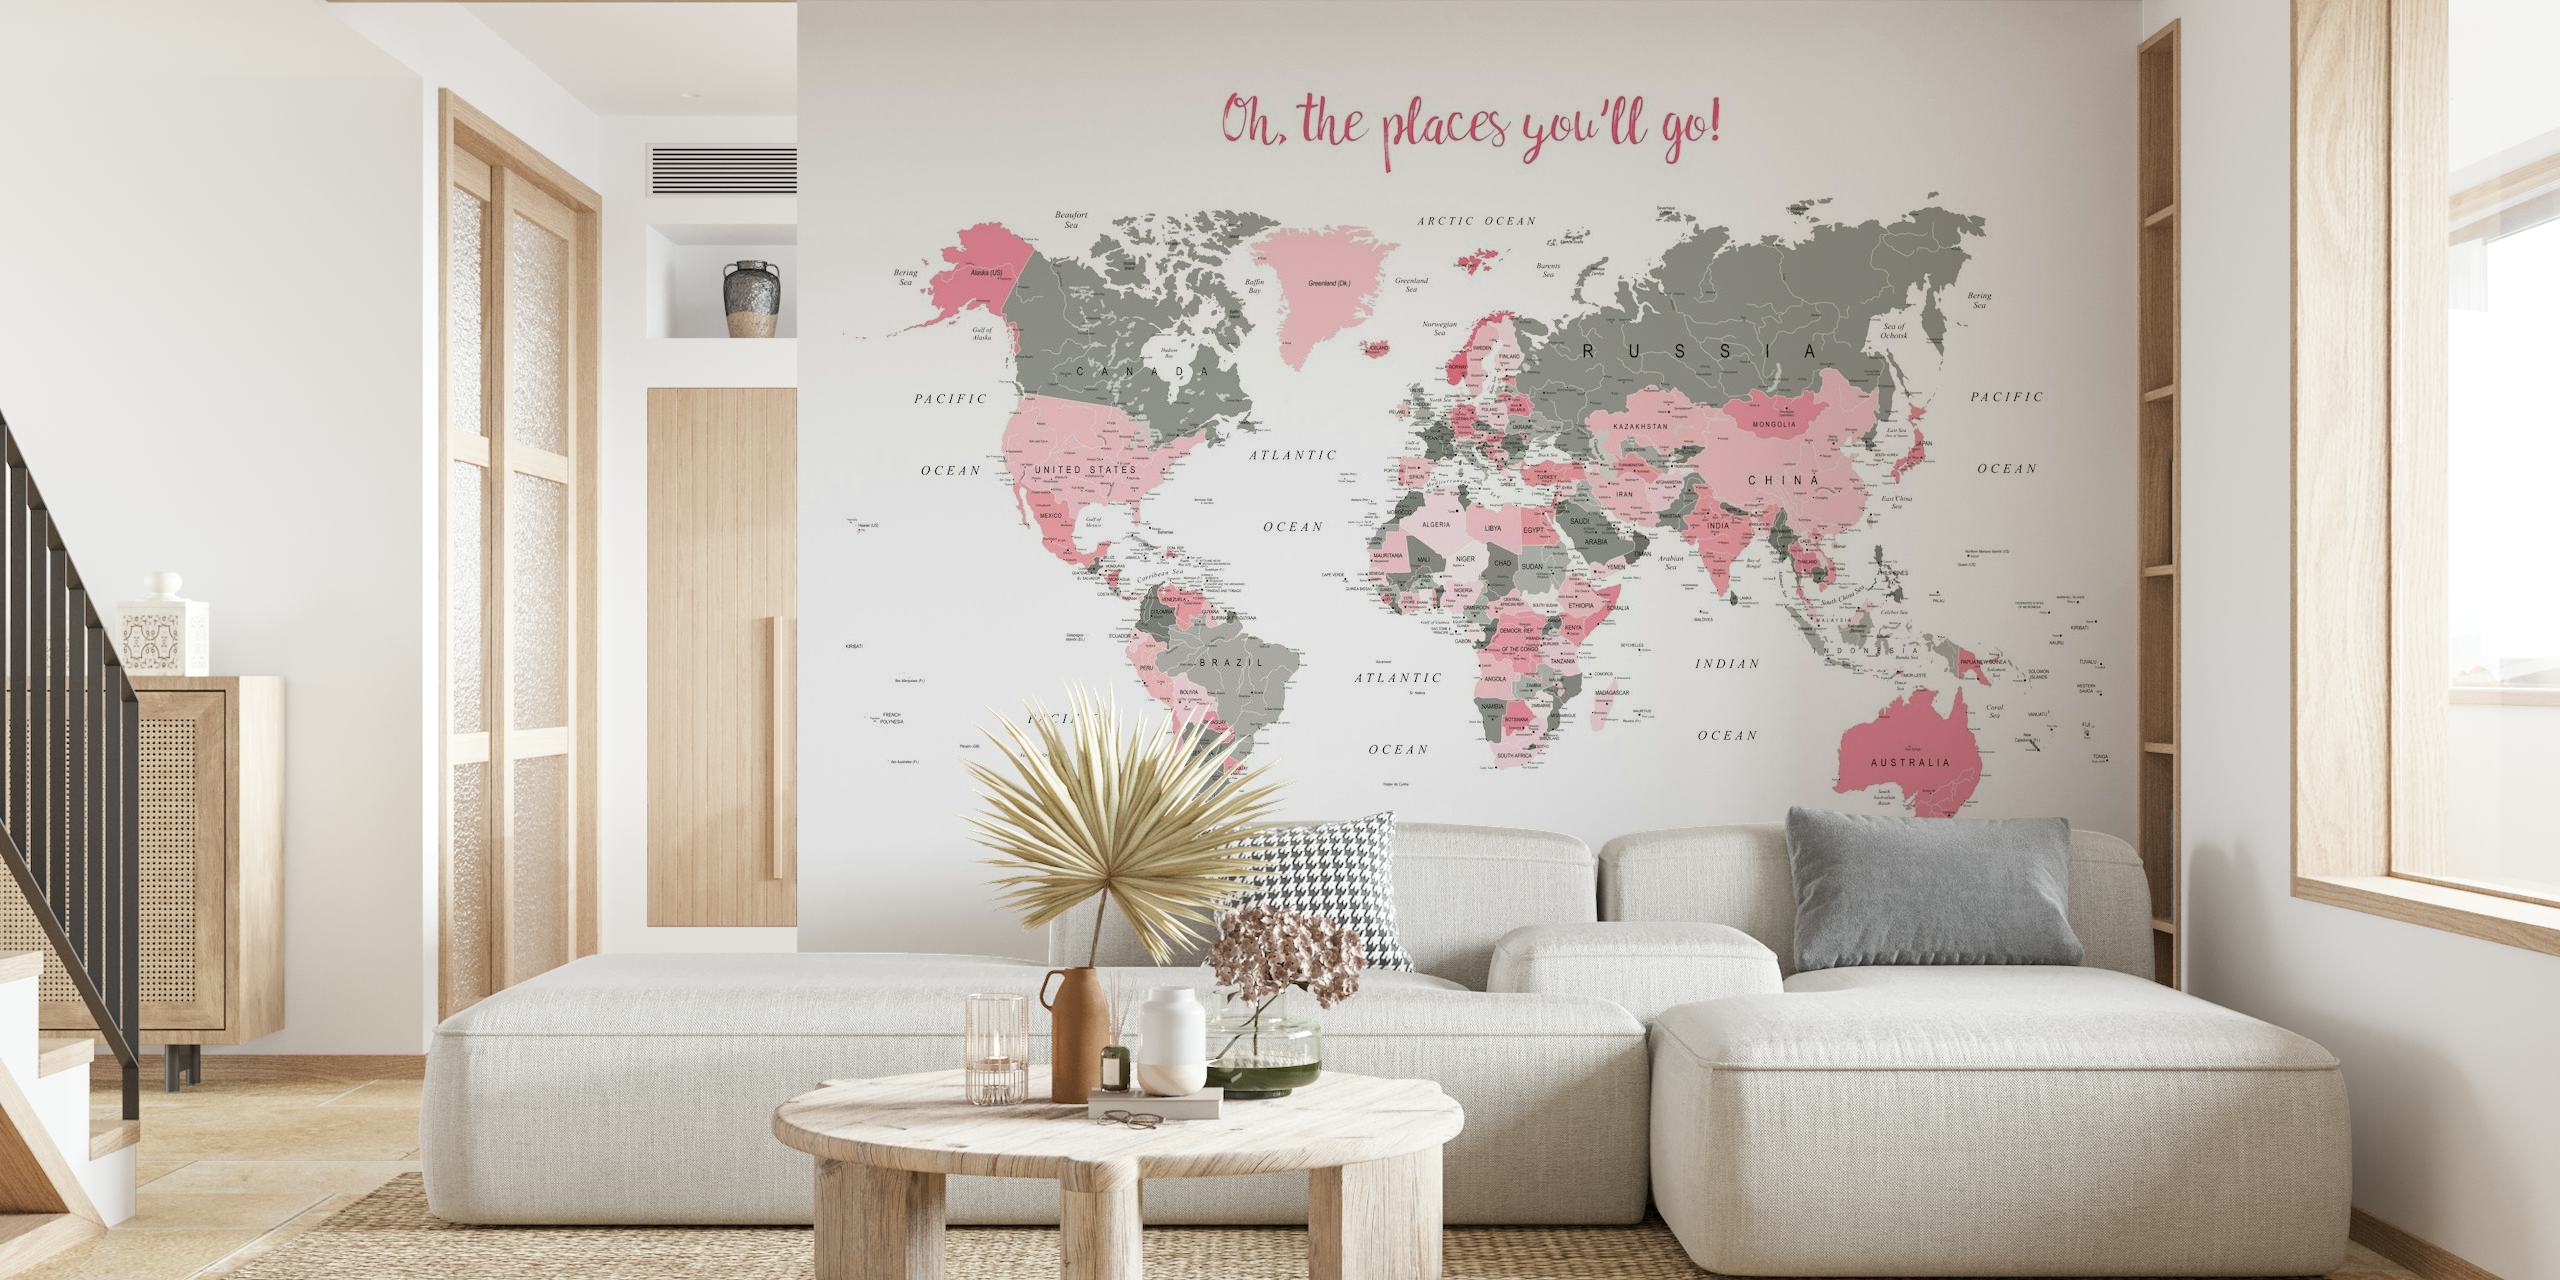 Stylová fototapeta s mapou světa s růžovým odleskem a frází "Oh The Places You'll Go!" pro domácí dekoraci.